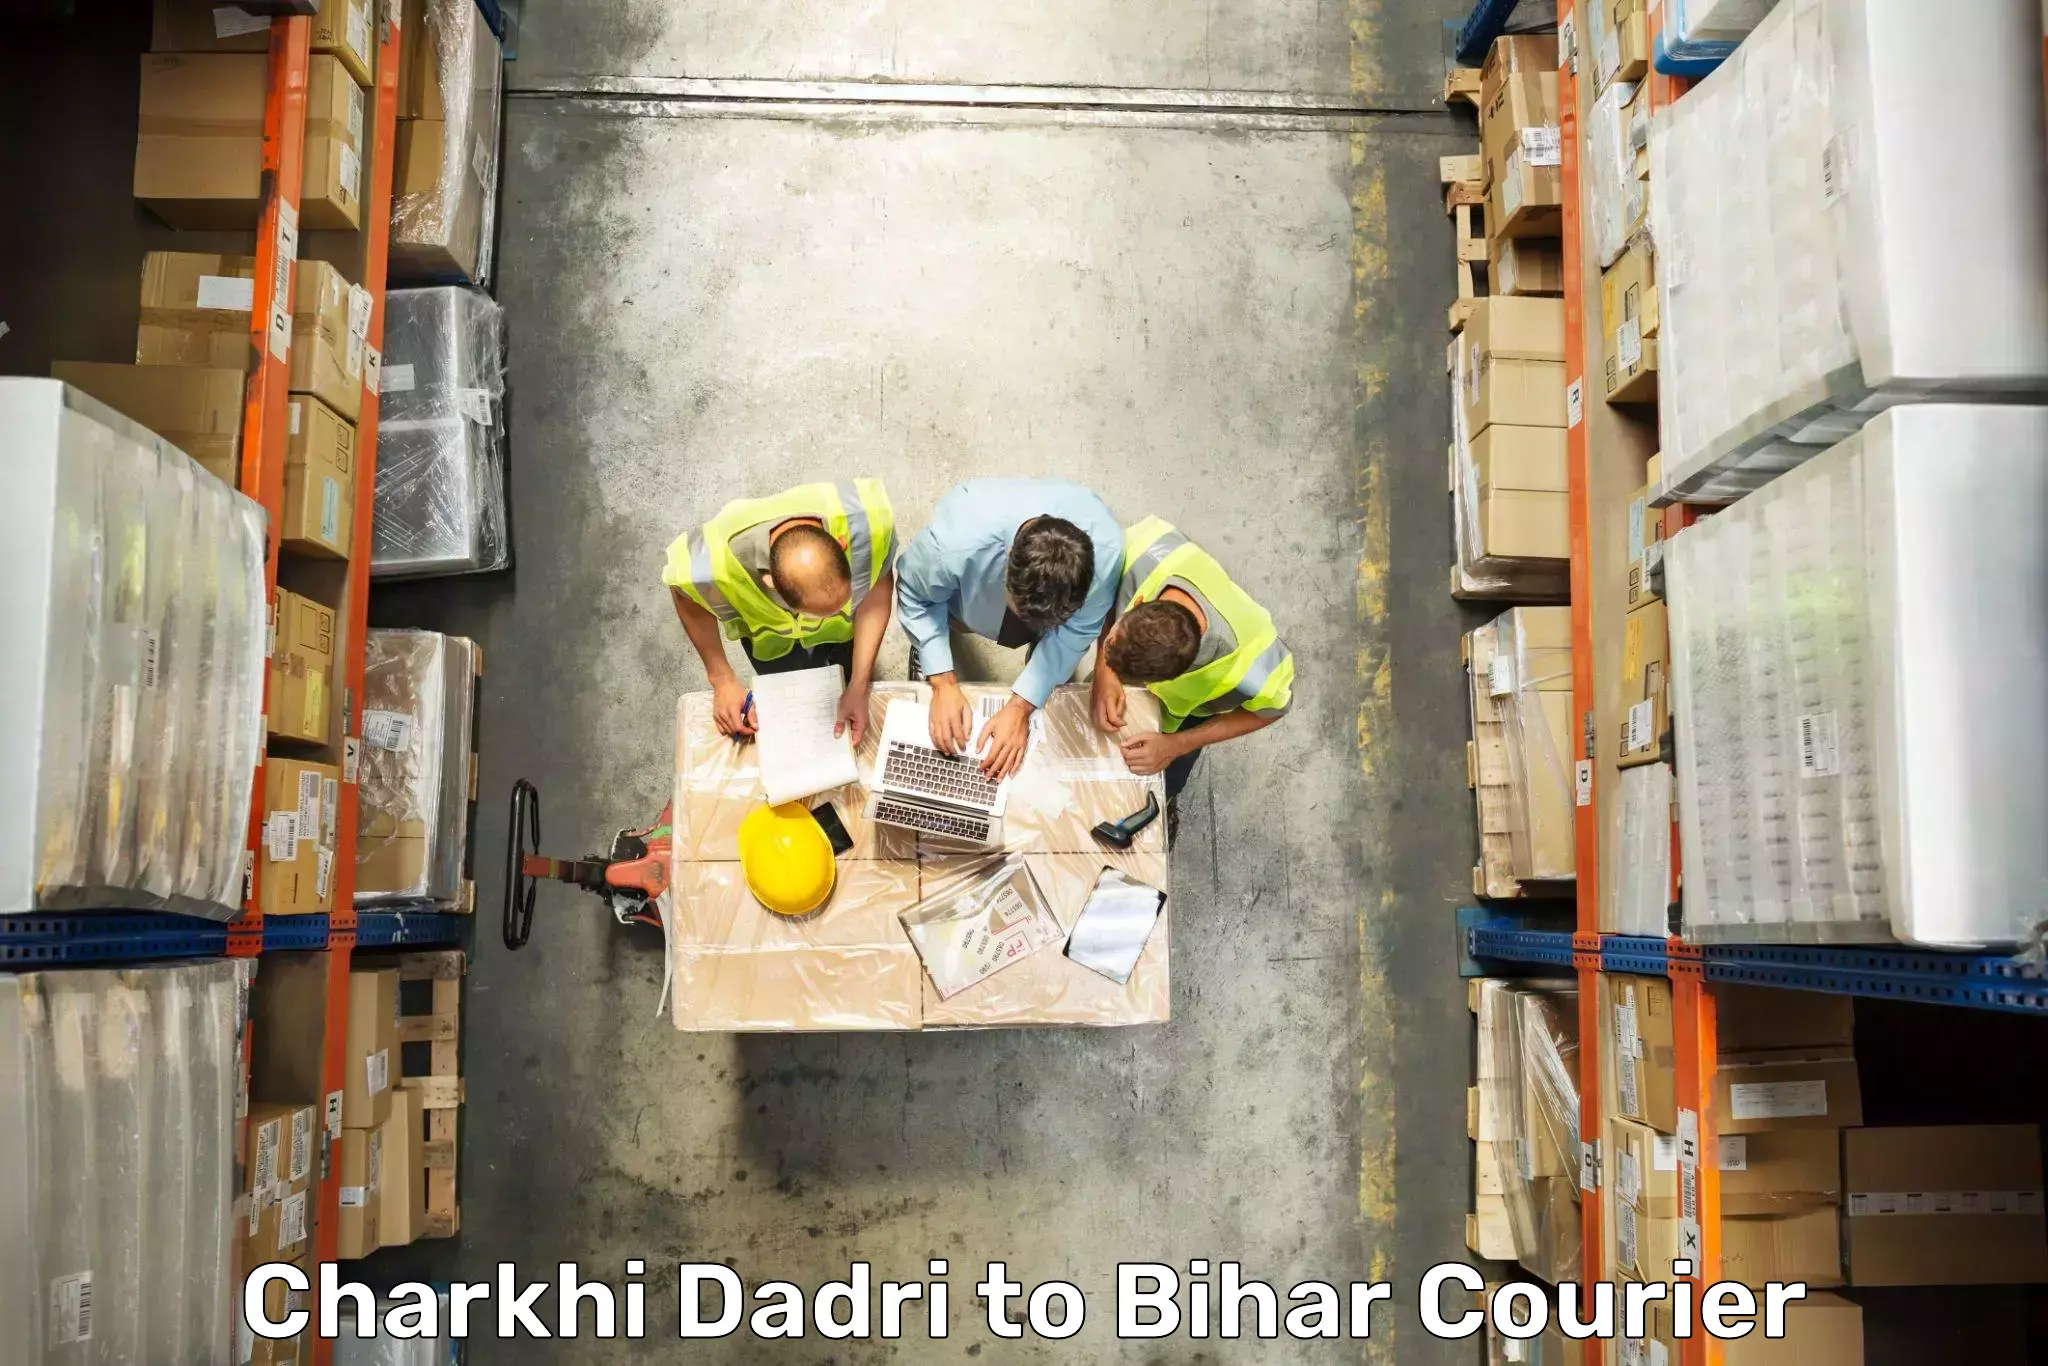 Baggage courier FAQs Charkhi Dadri to Barhiya